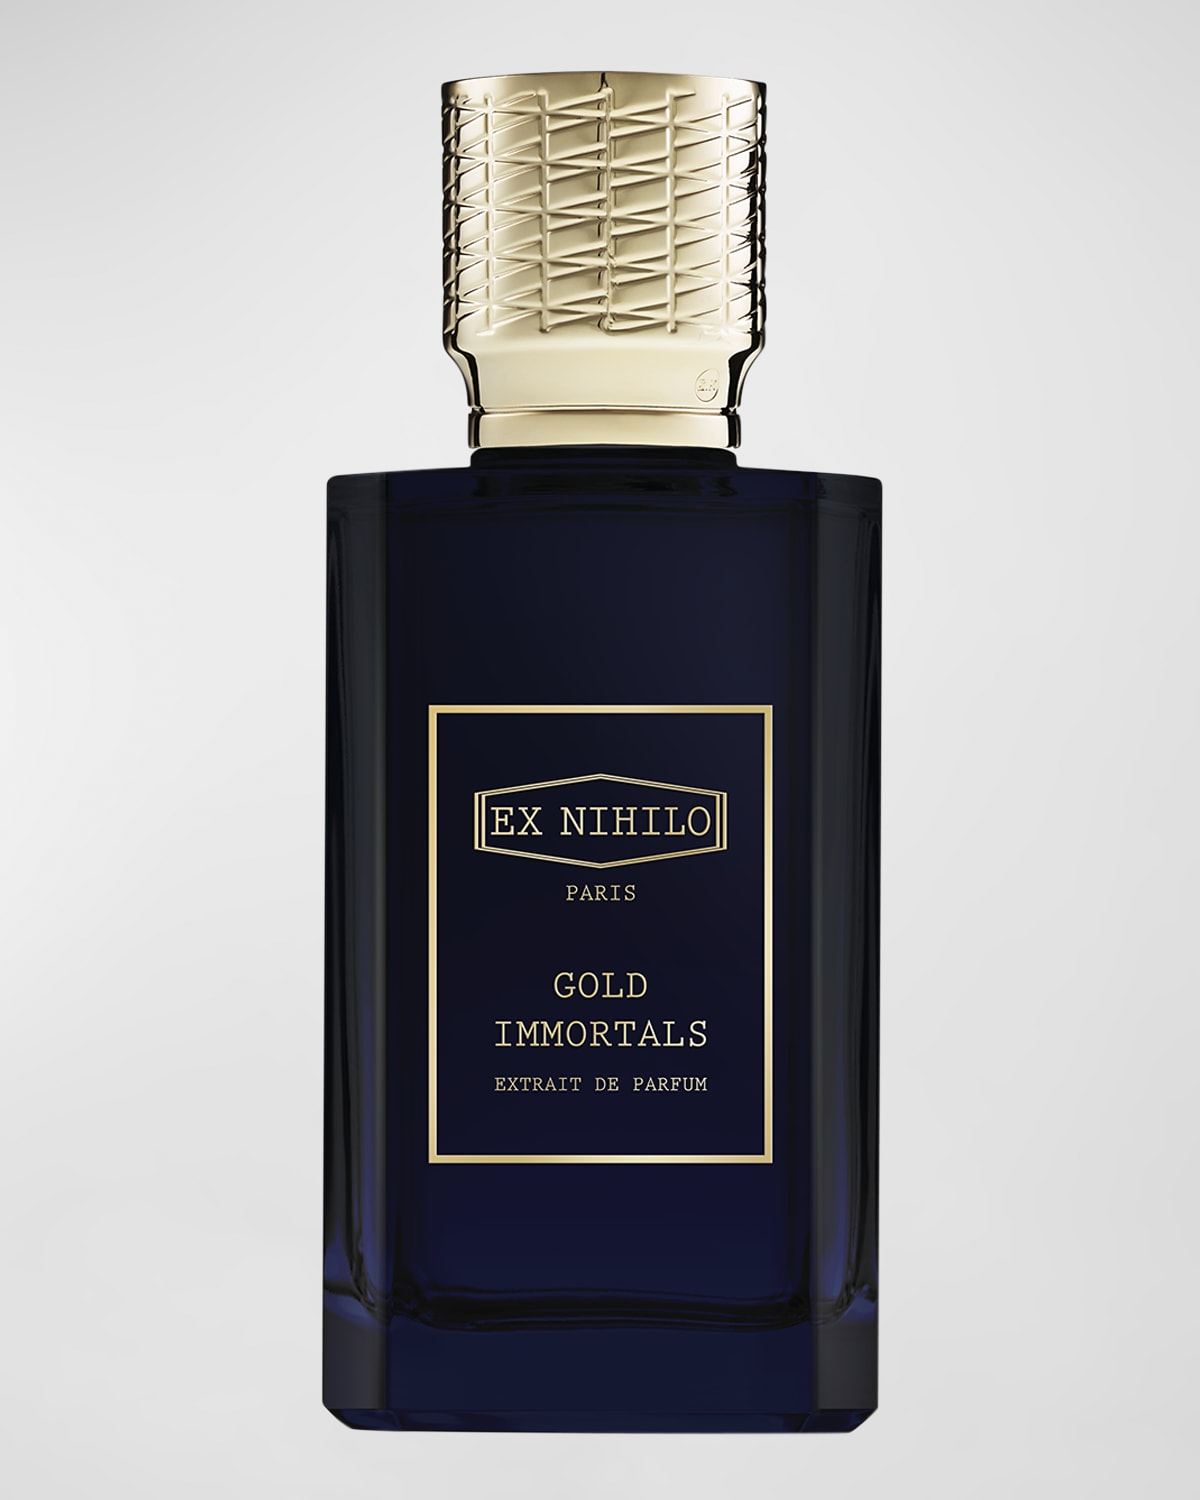 Gold Immortals Extrait de Parfum, 3.3 oz.